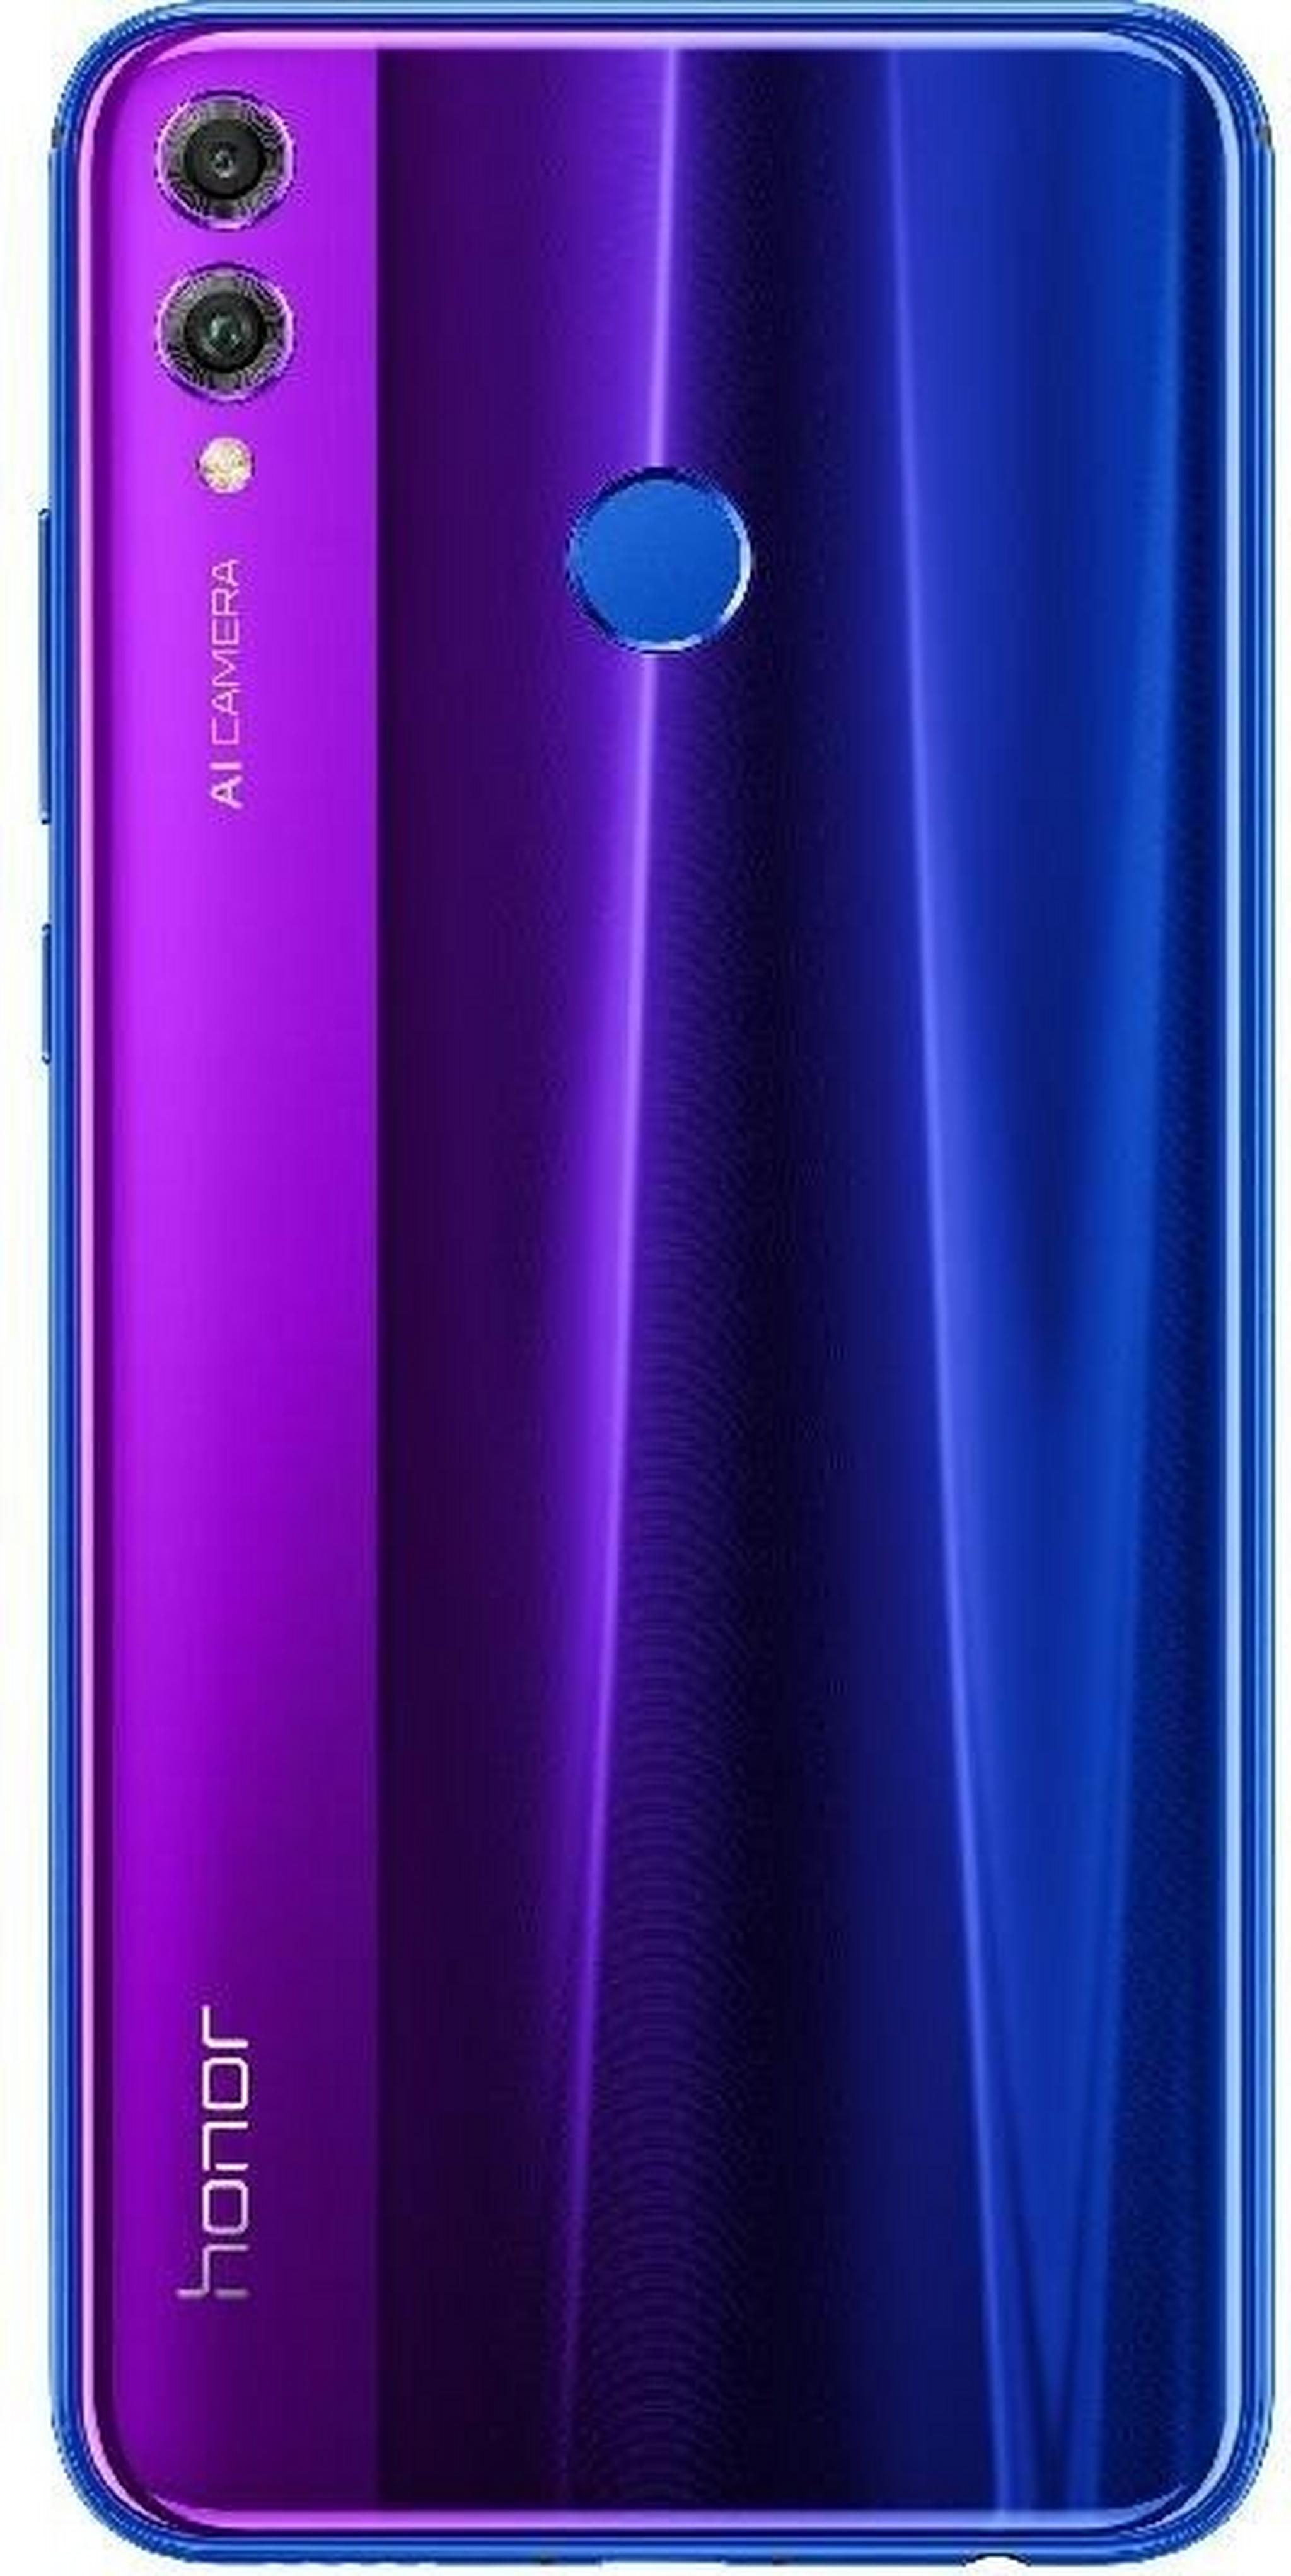 HONOR 8X 128GB Phone - Phantom Blue